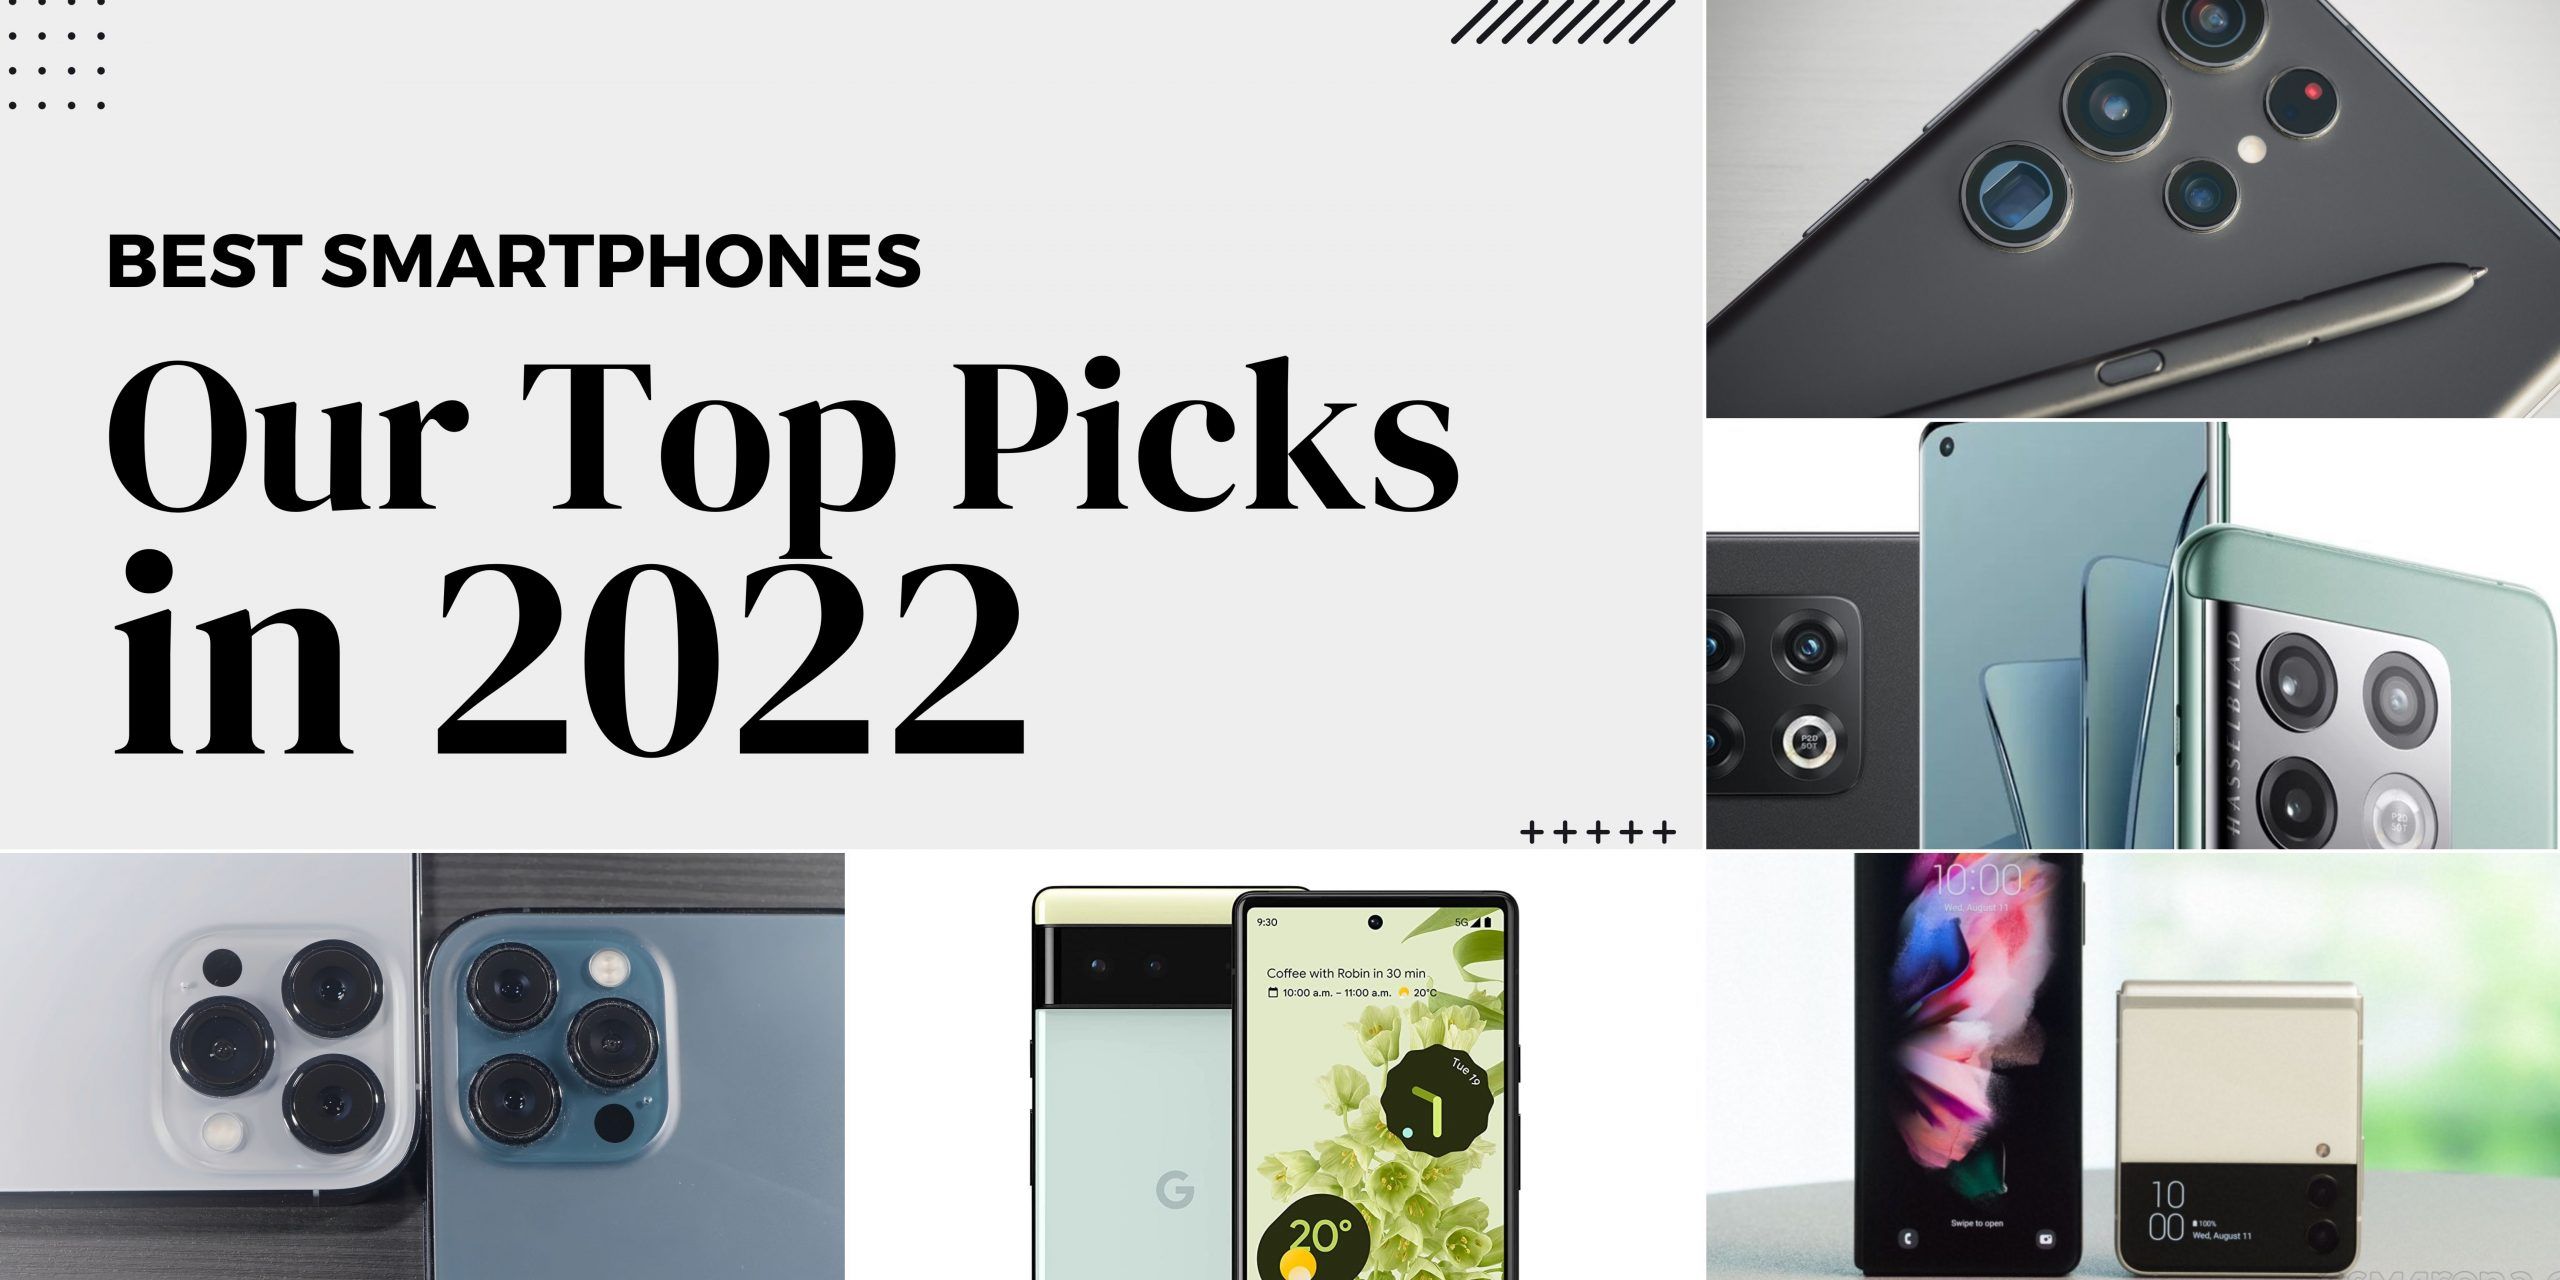 TOP PICKS FOR THE BEST SMARTPHONES IN 2022